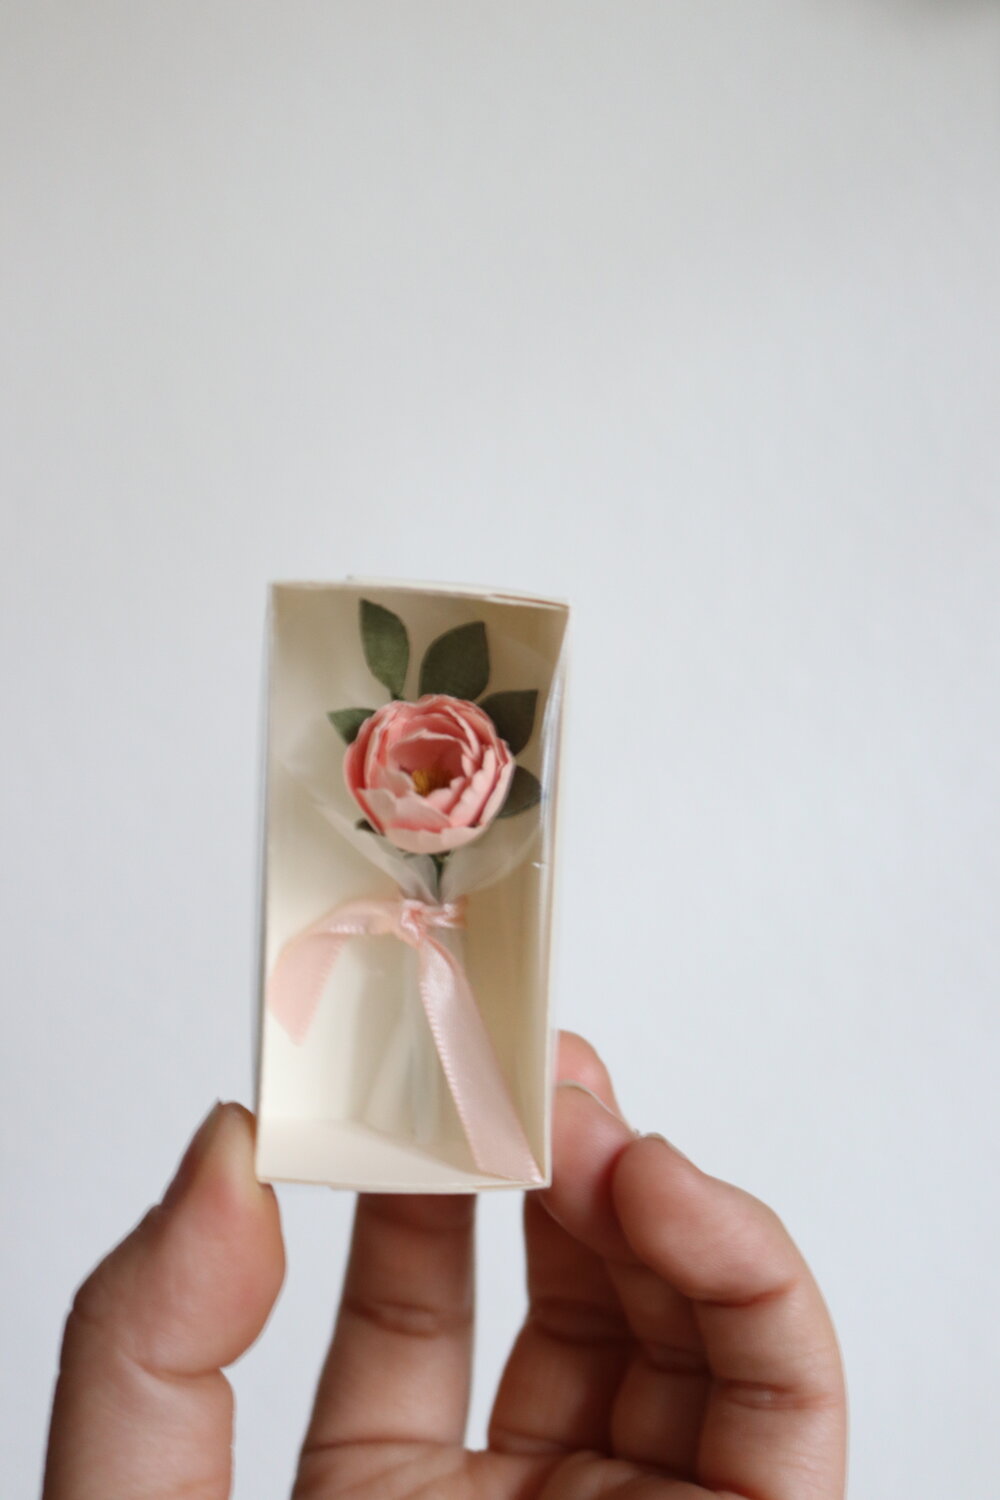 Mini Paper Flower Bouquet